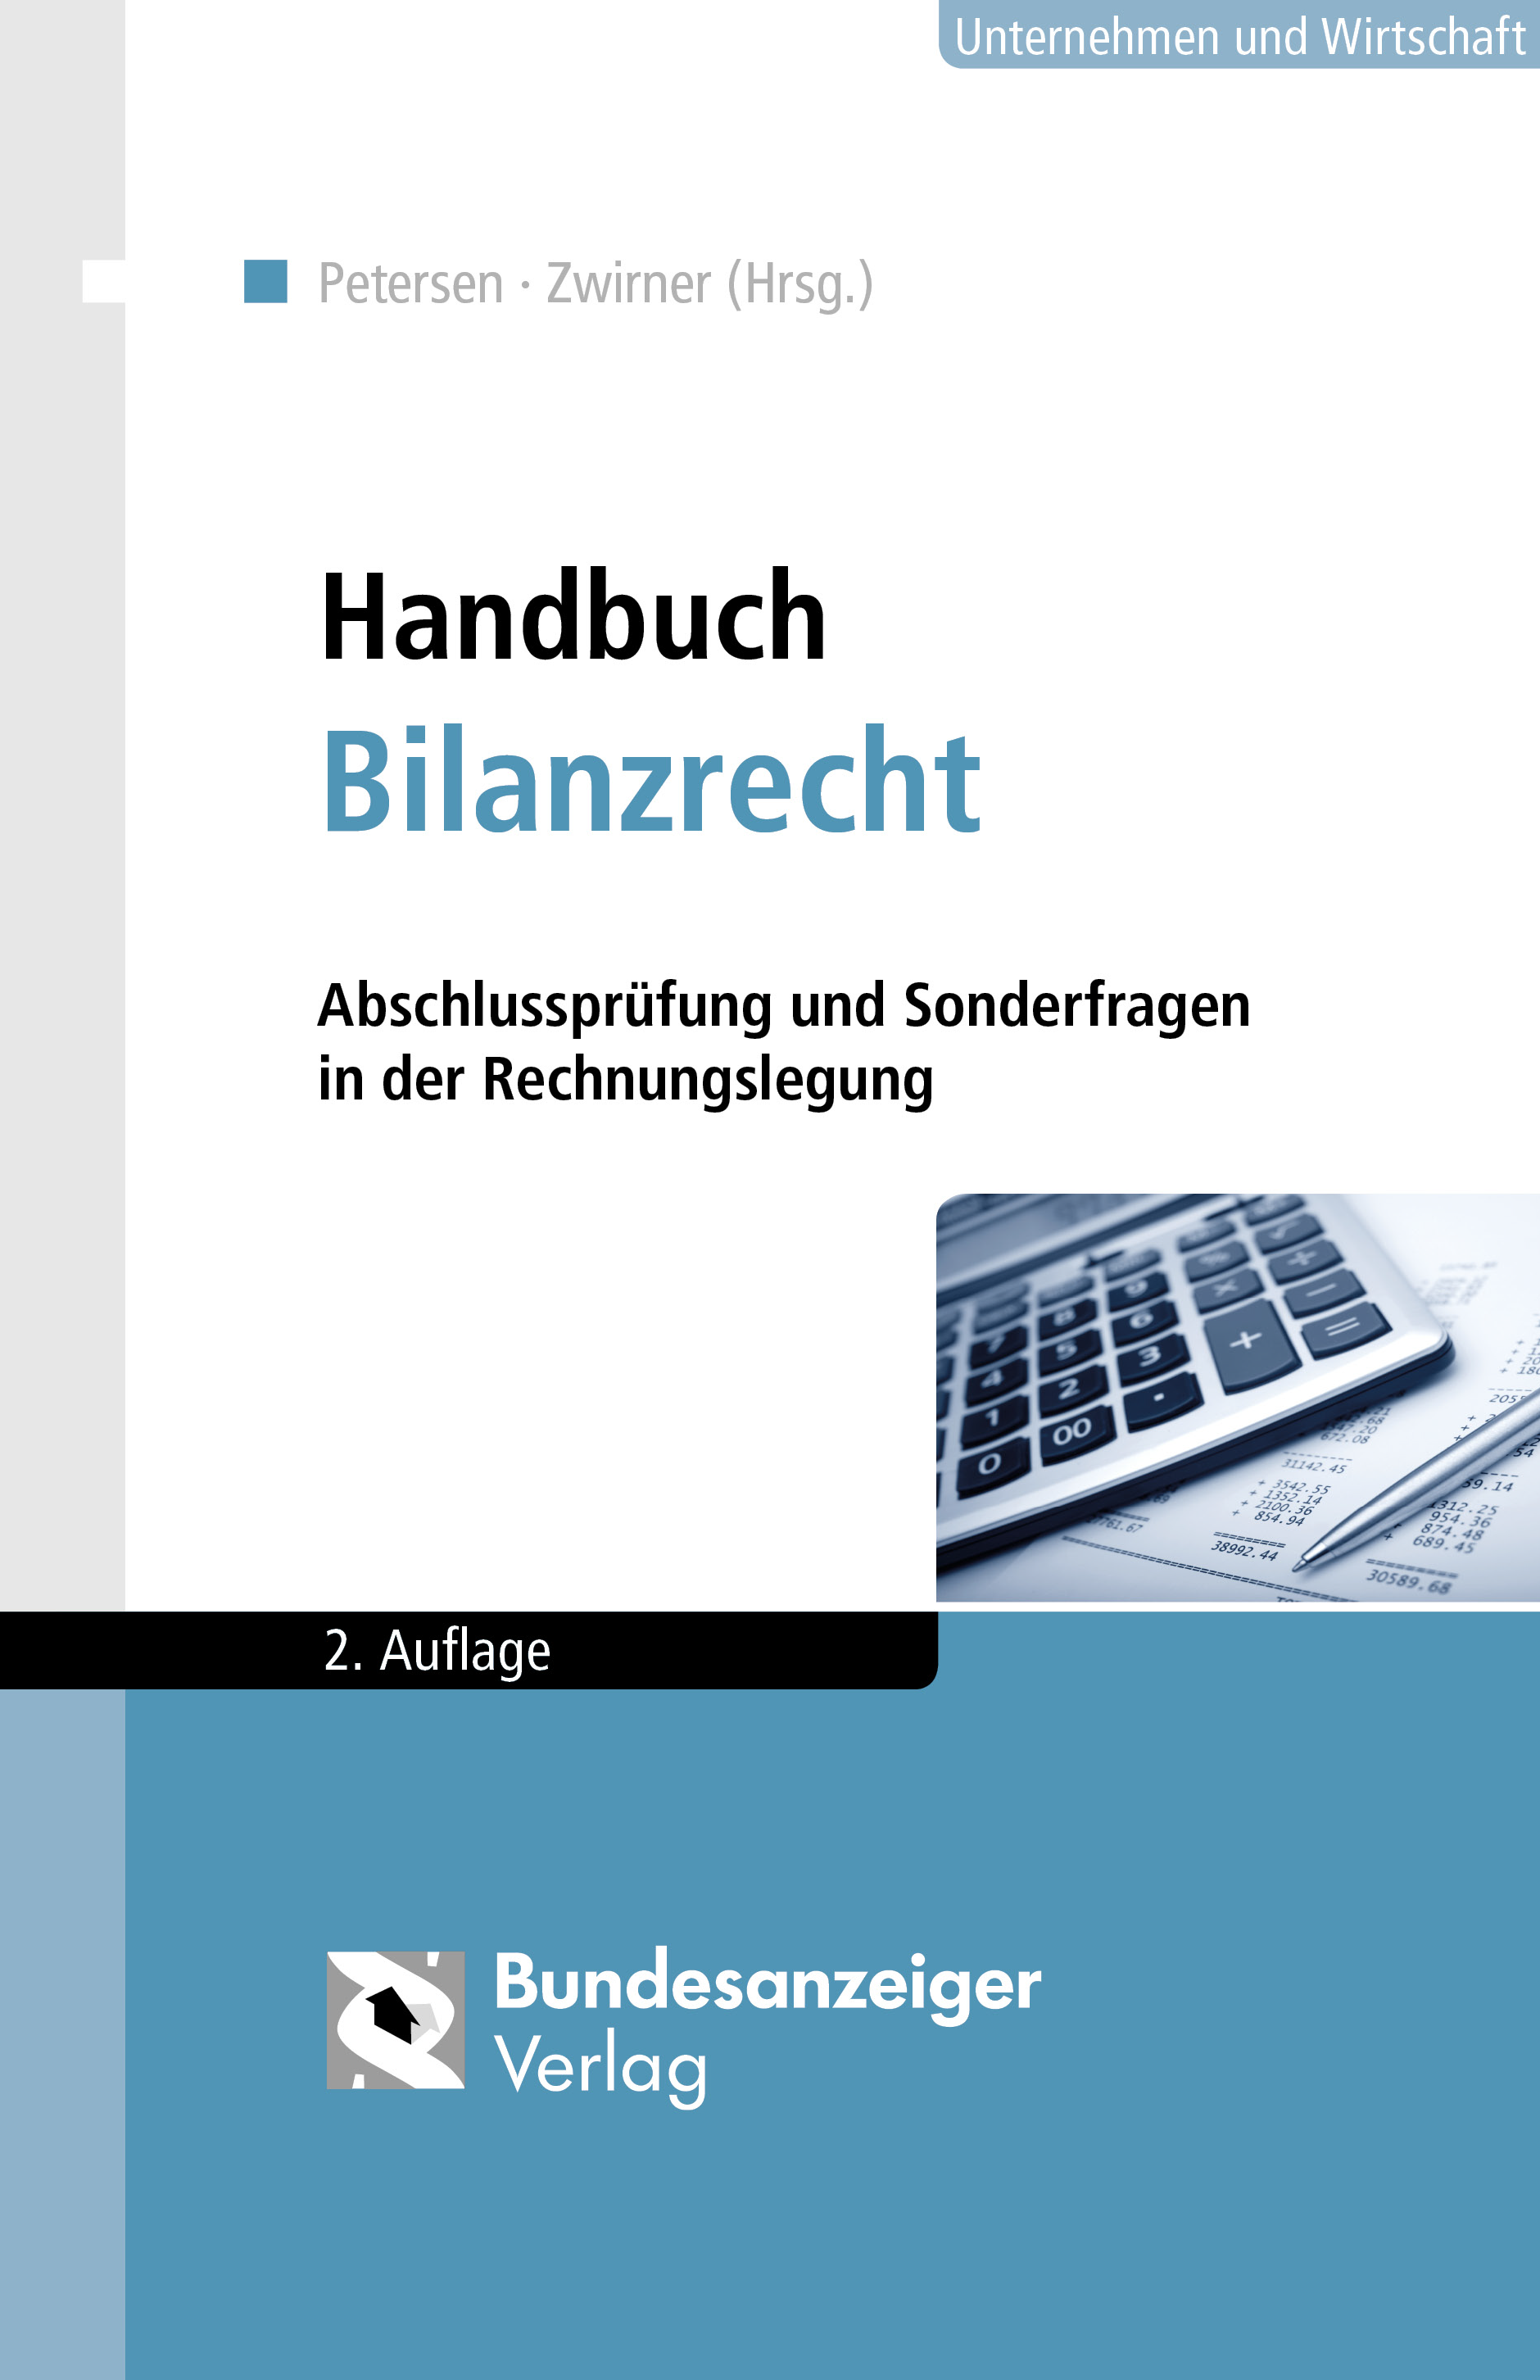 Abbildung: Handbuch Bilanzrecht